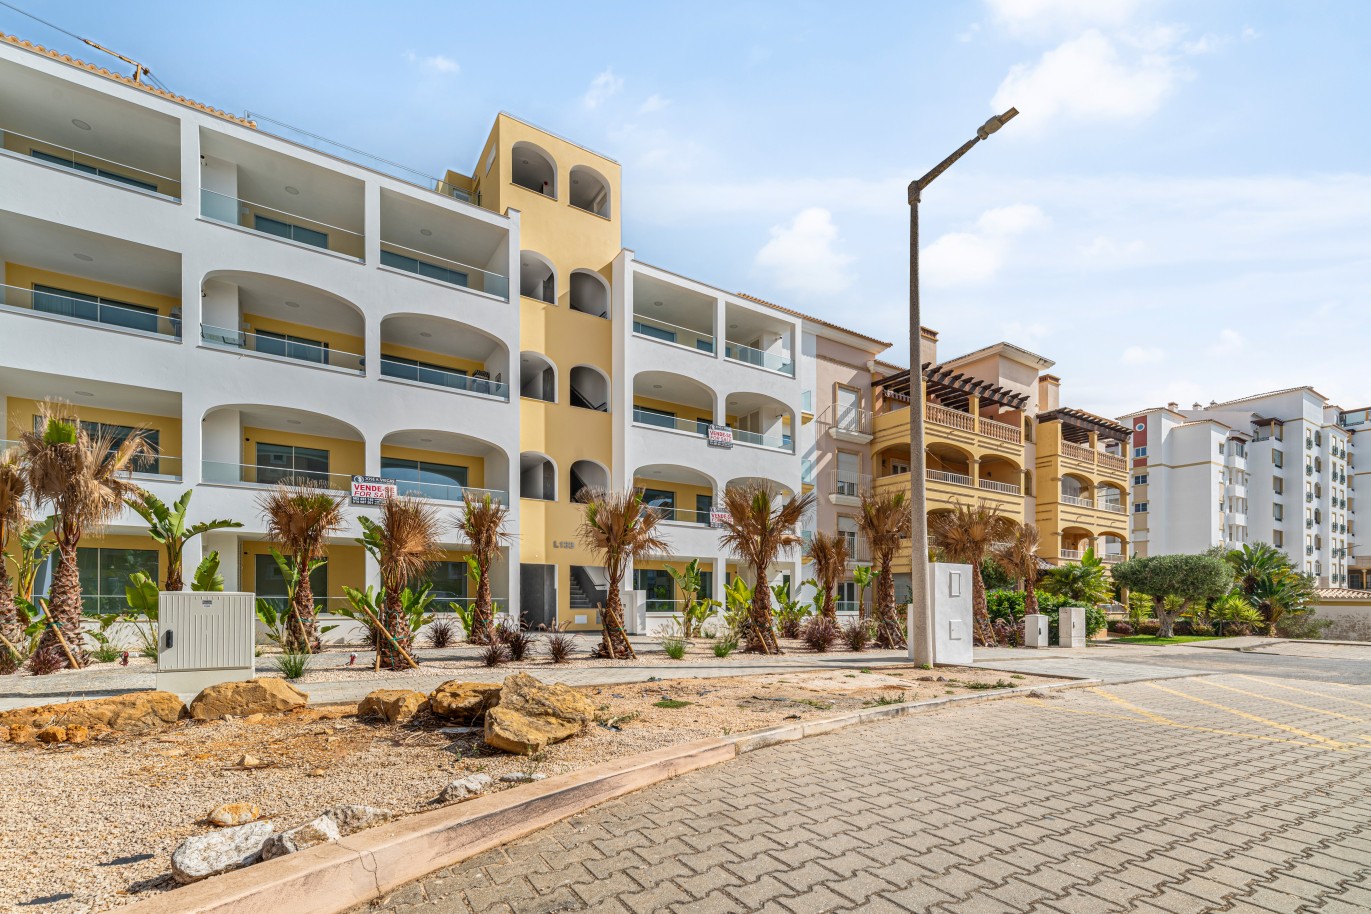 Verkauf einer Wohnung im Bau, mit Terrasse, Lagos, Algarve, Portugal_238239